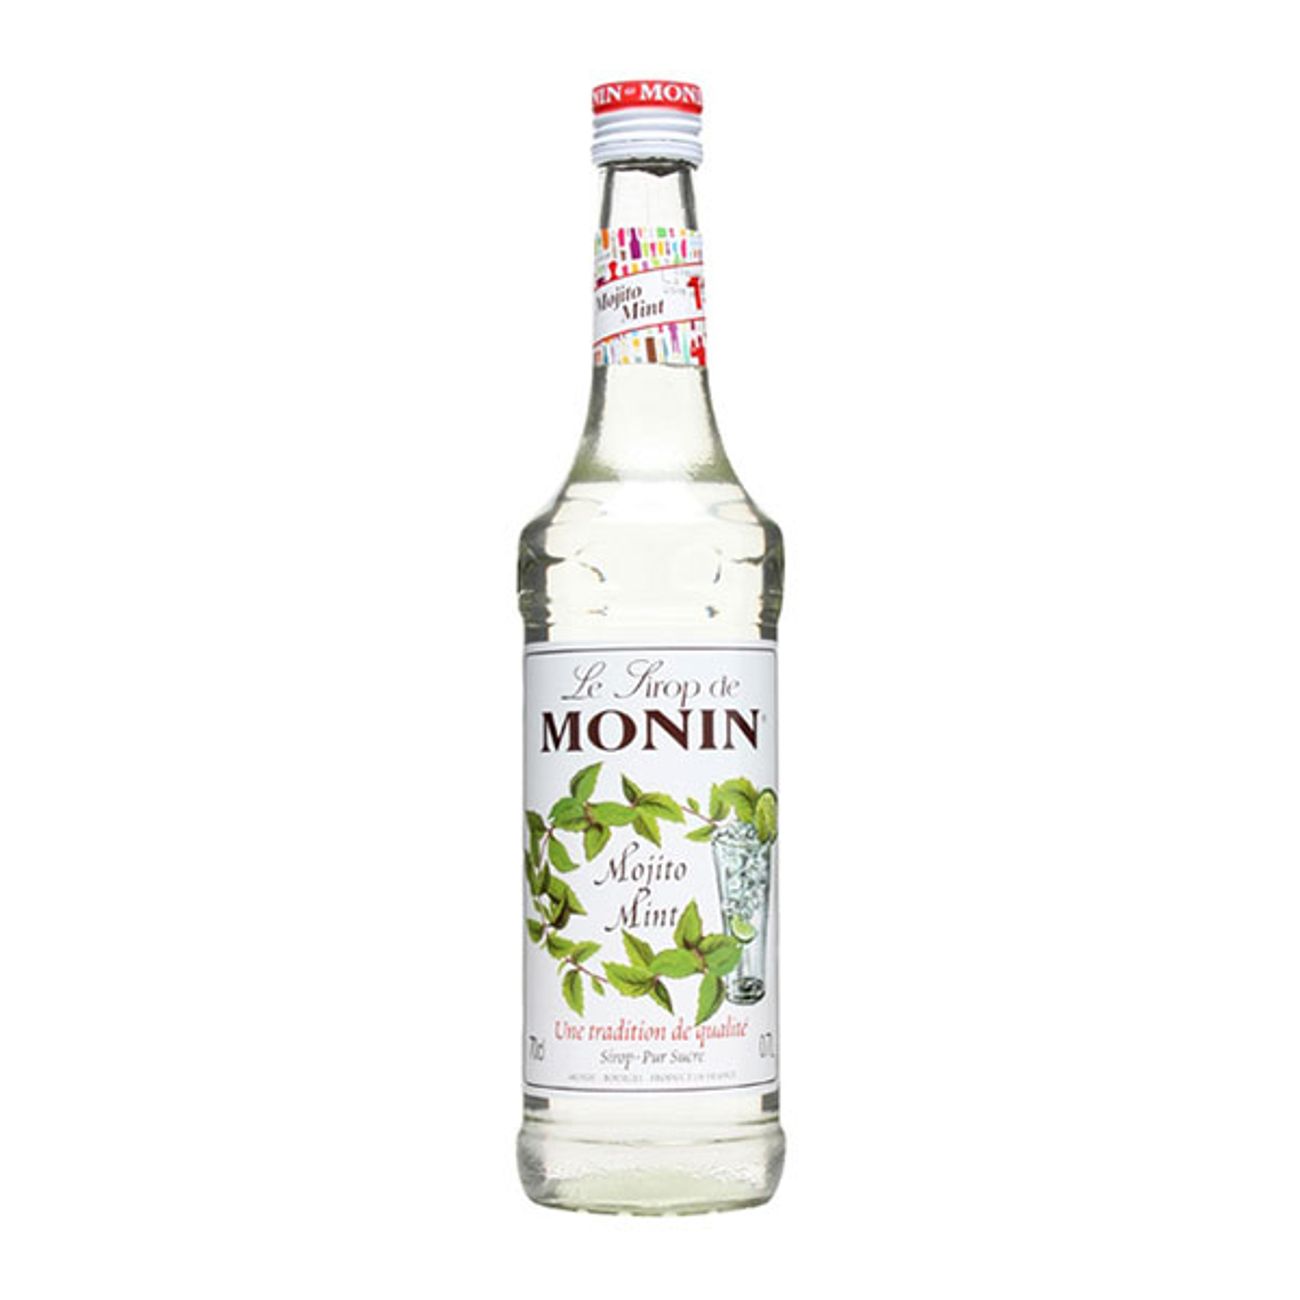 monin-mojito-mint-drinkmix-1